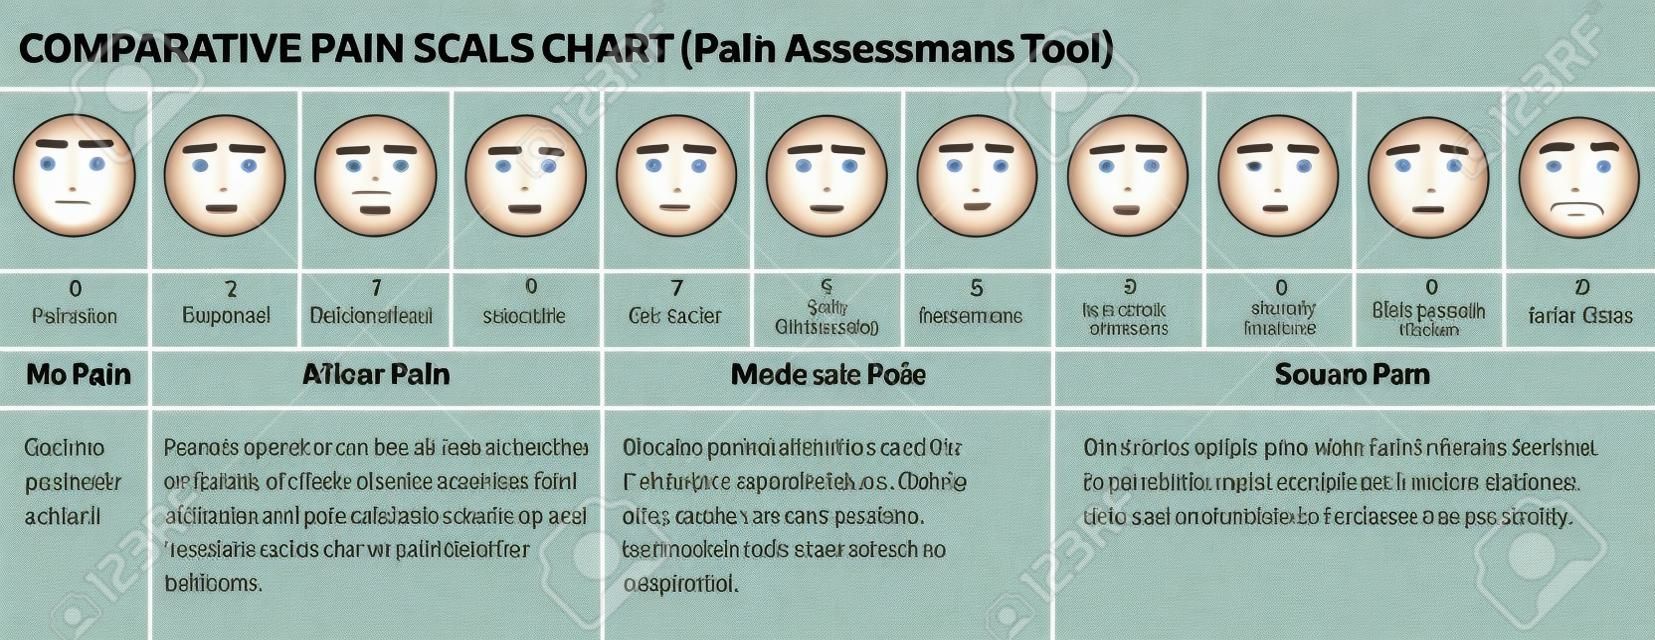 Twarze skali bólu. skali oceny bólu lekarze. Wykres porównawczy skali bólu. Twarze narzędzie ocena bólu. Wykres wizualna ból.